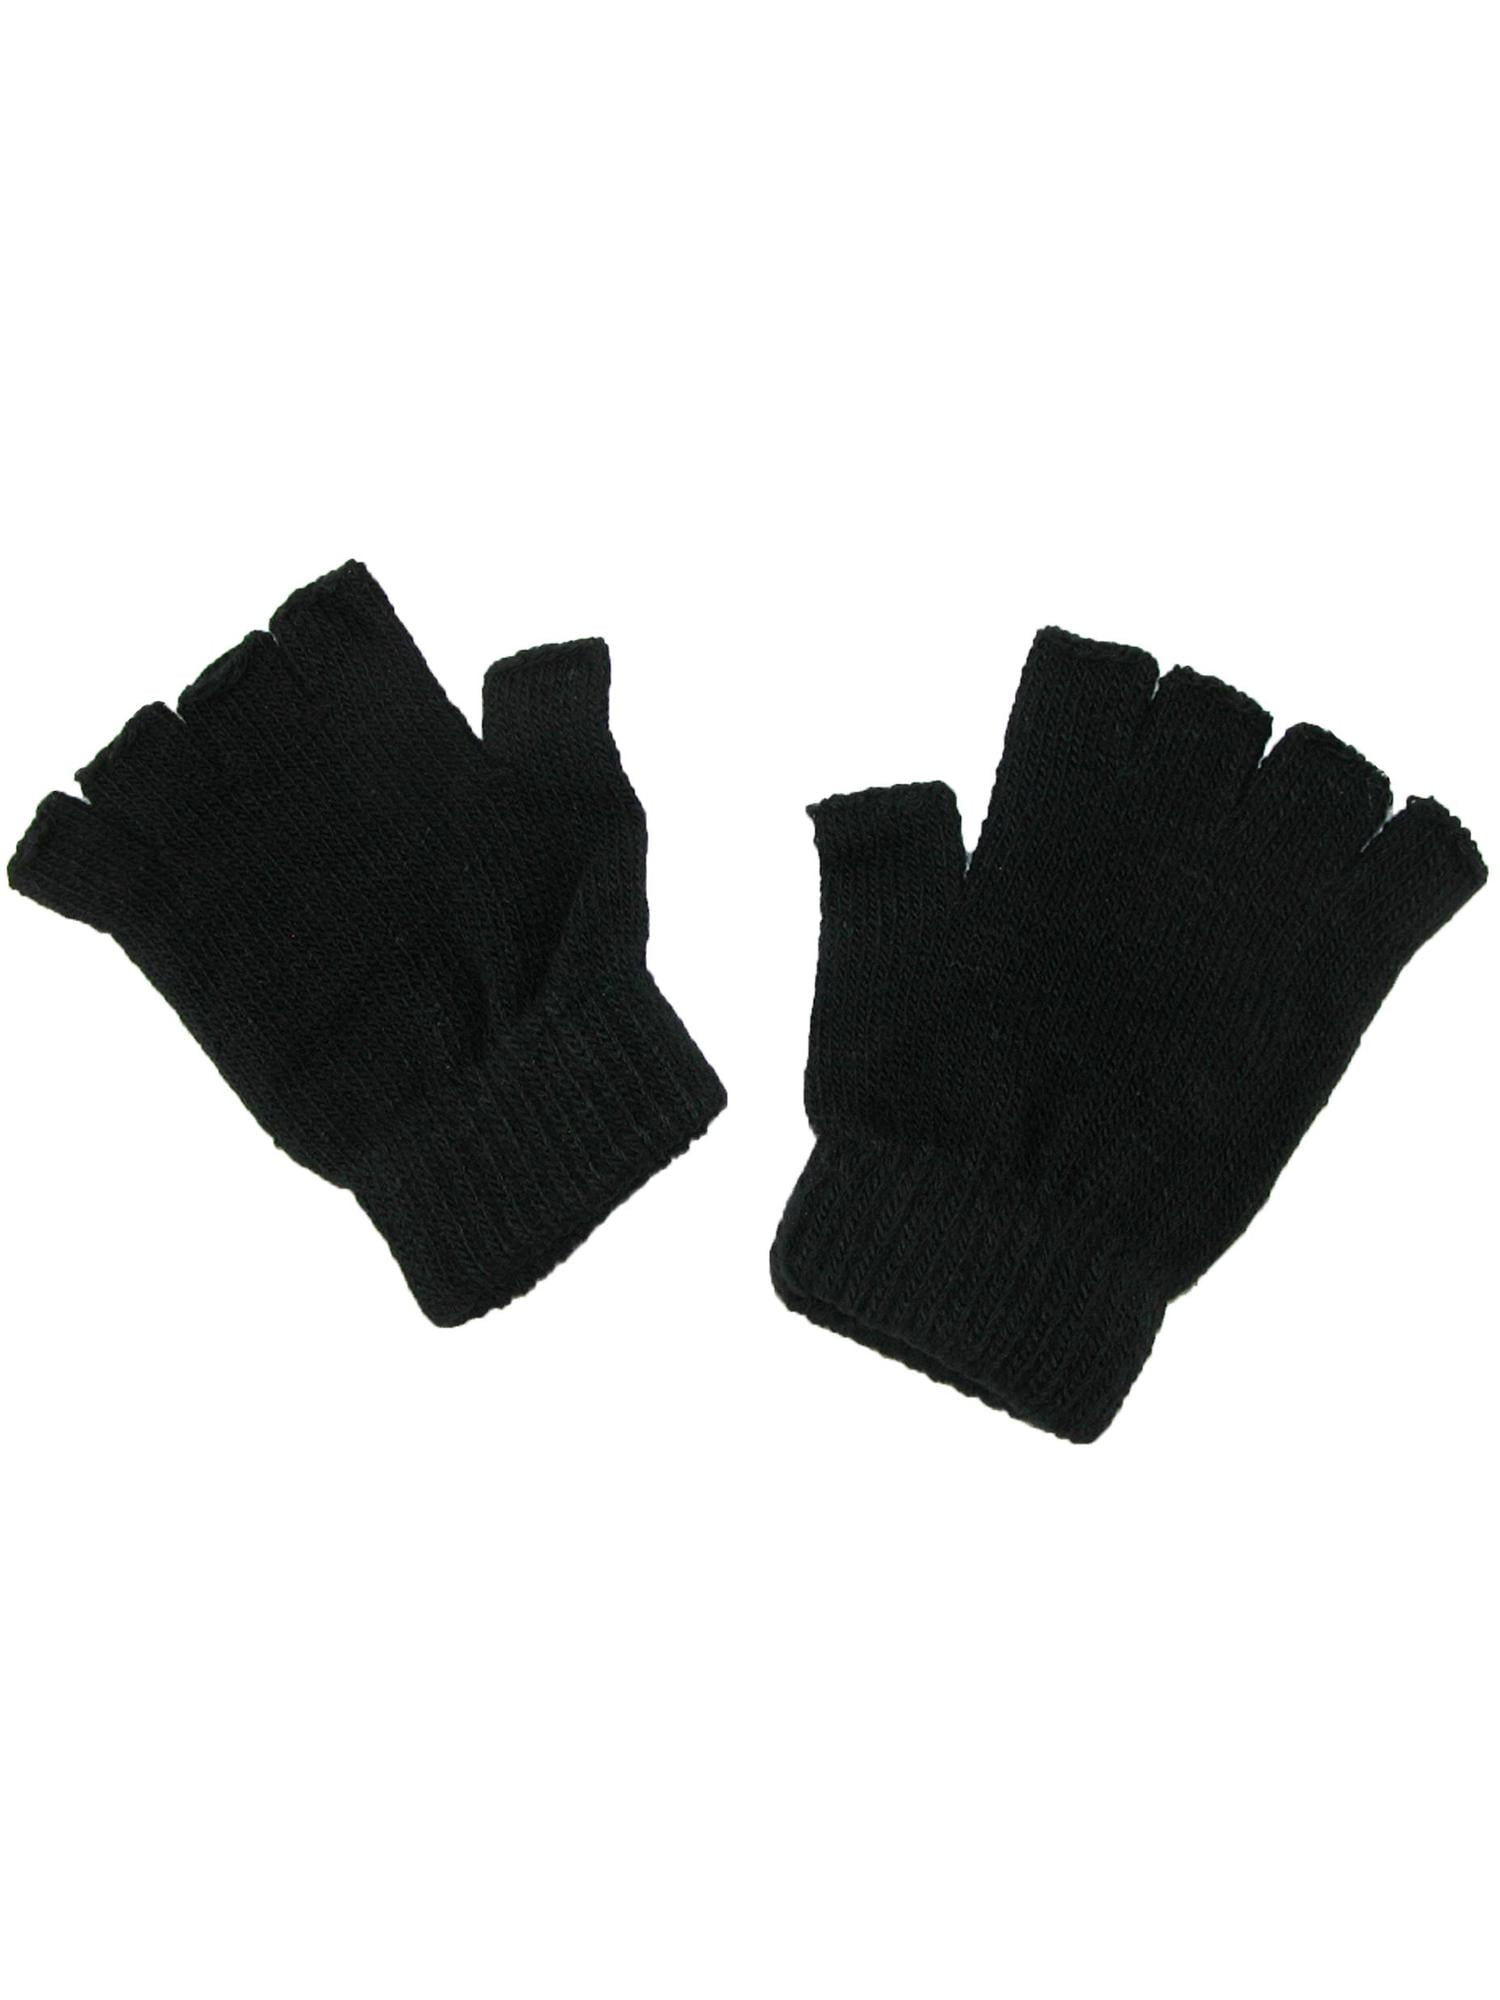 mens womens fingerless black gloves FINGERLESS WARM STRETCH BLACK MAGIC GLOVES 